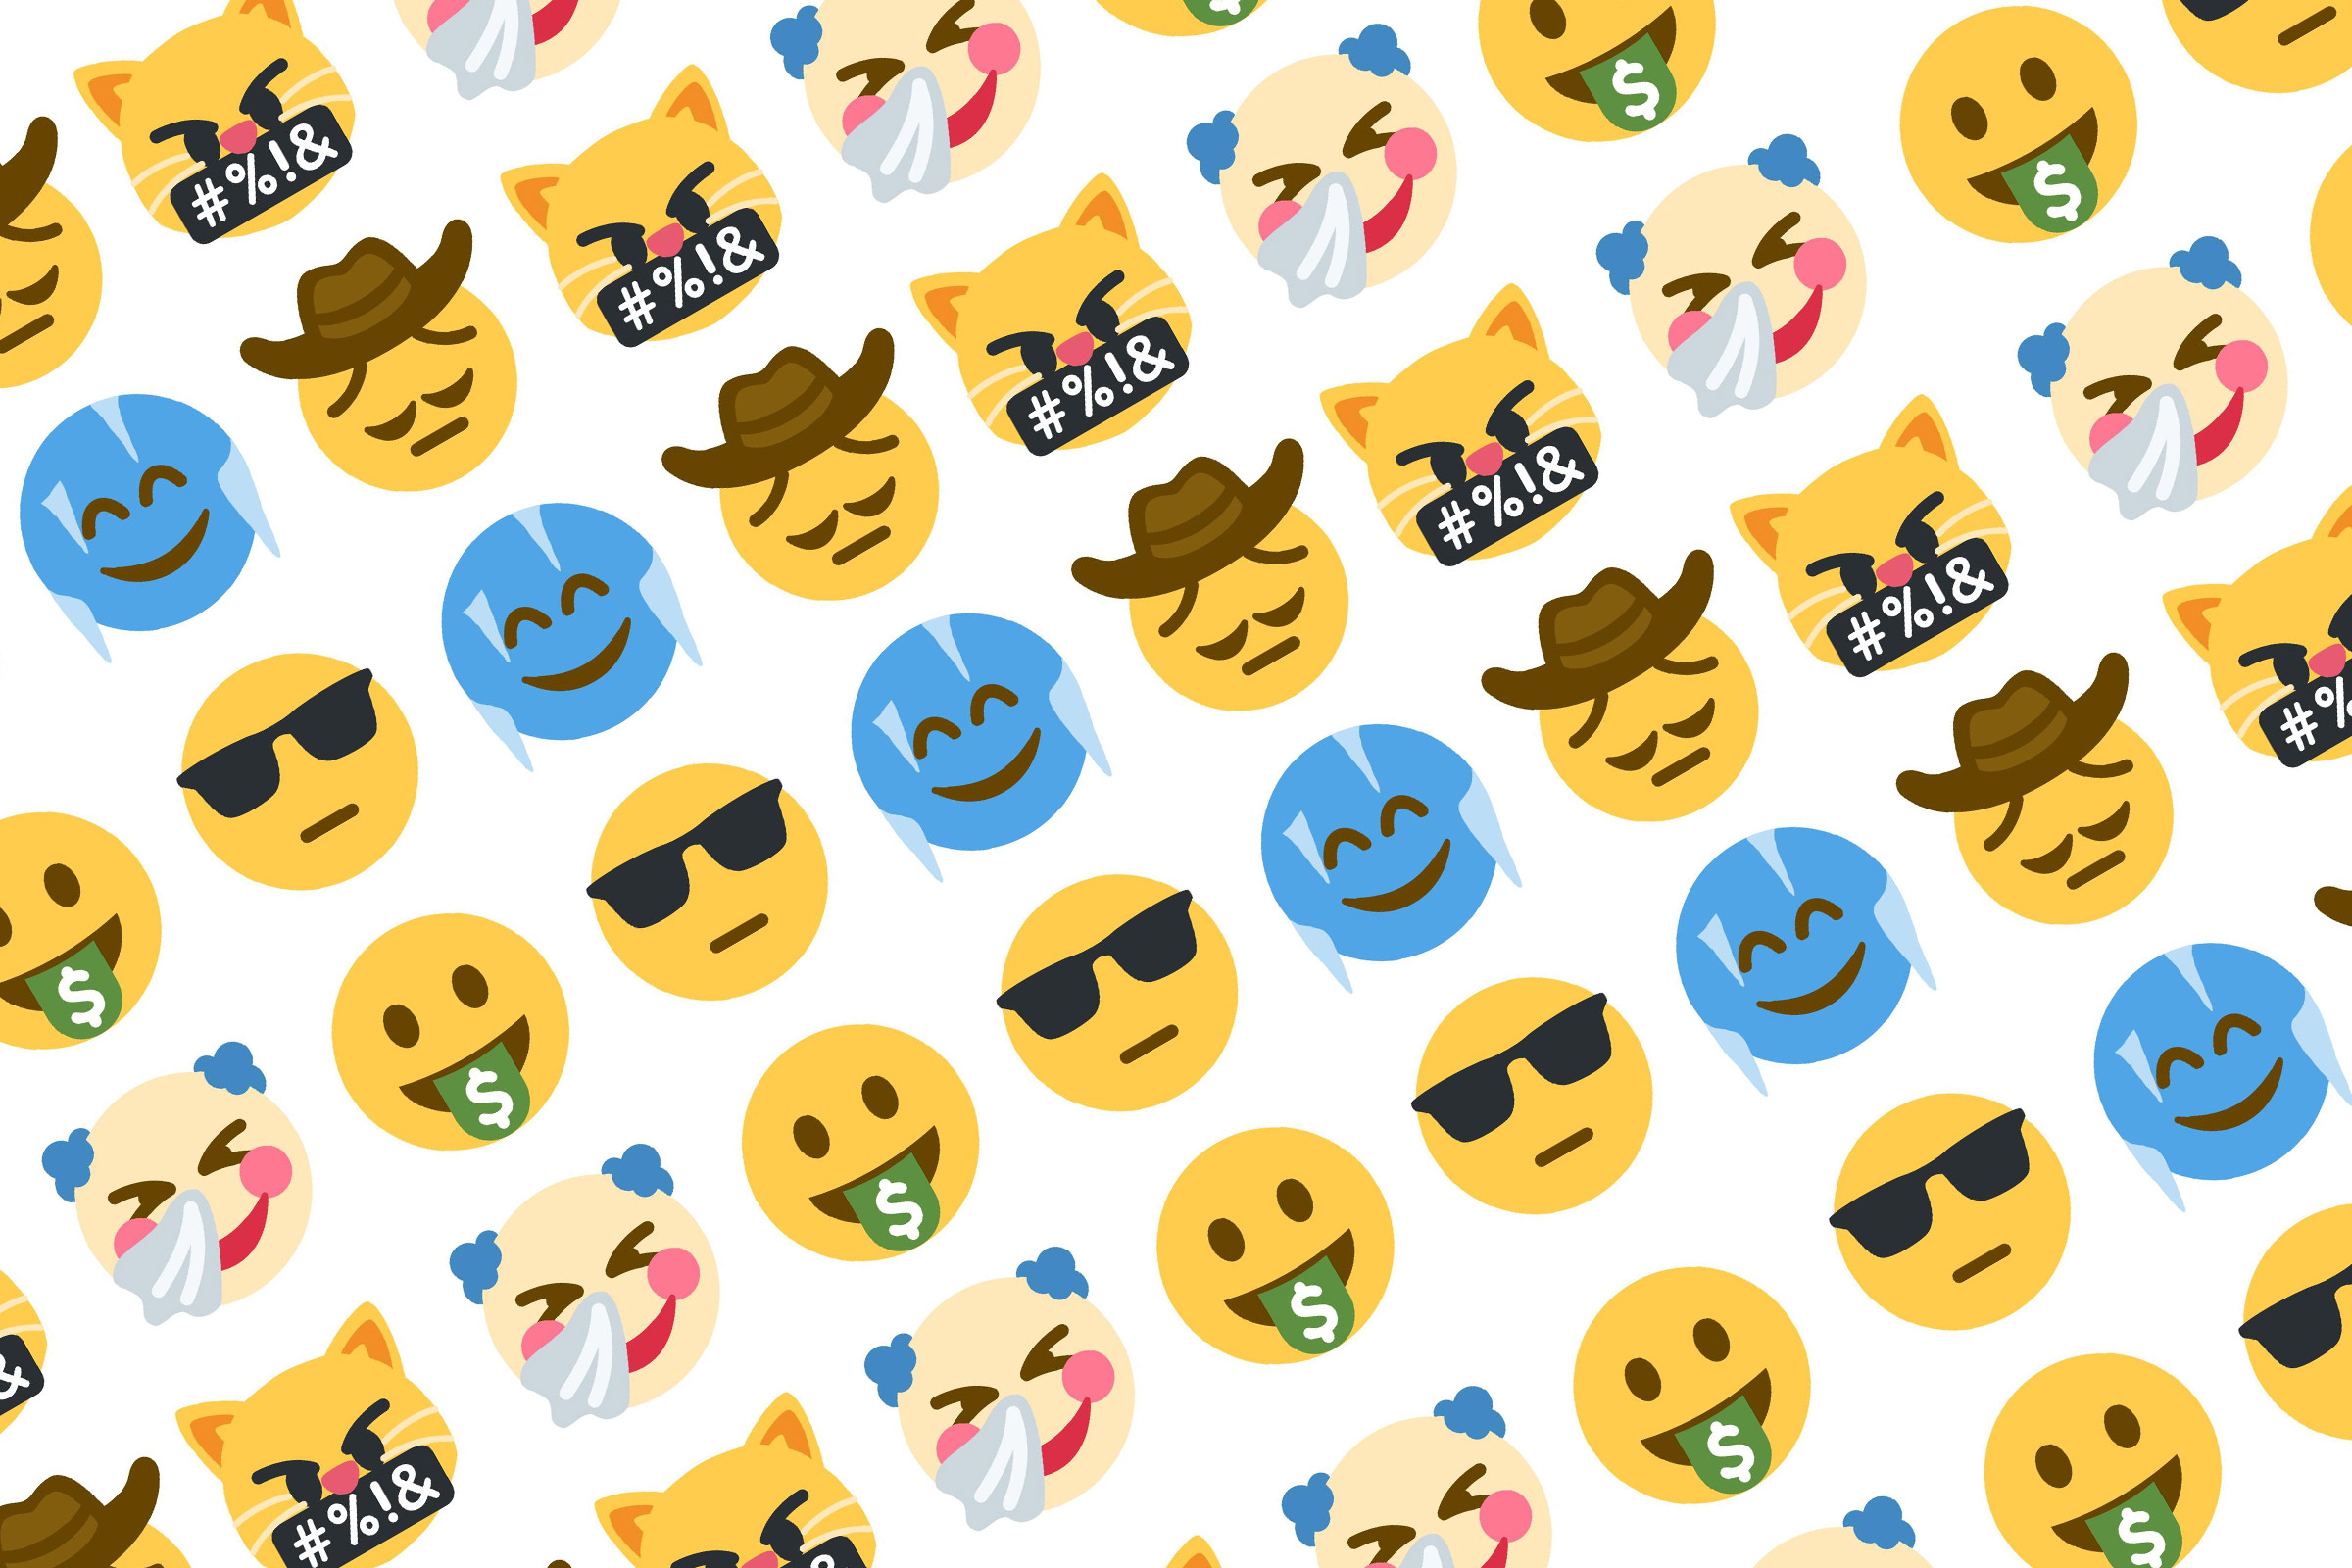 Emoji Mashup Bot